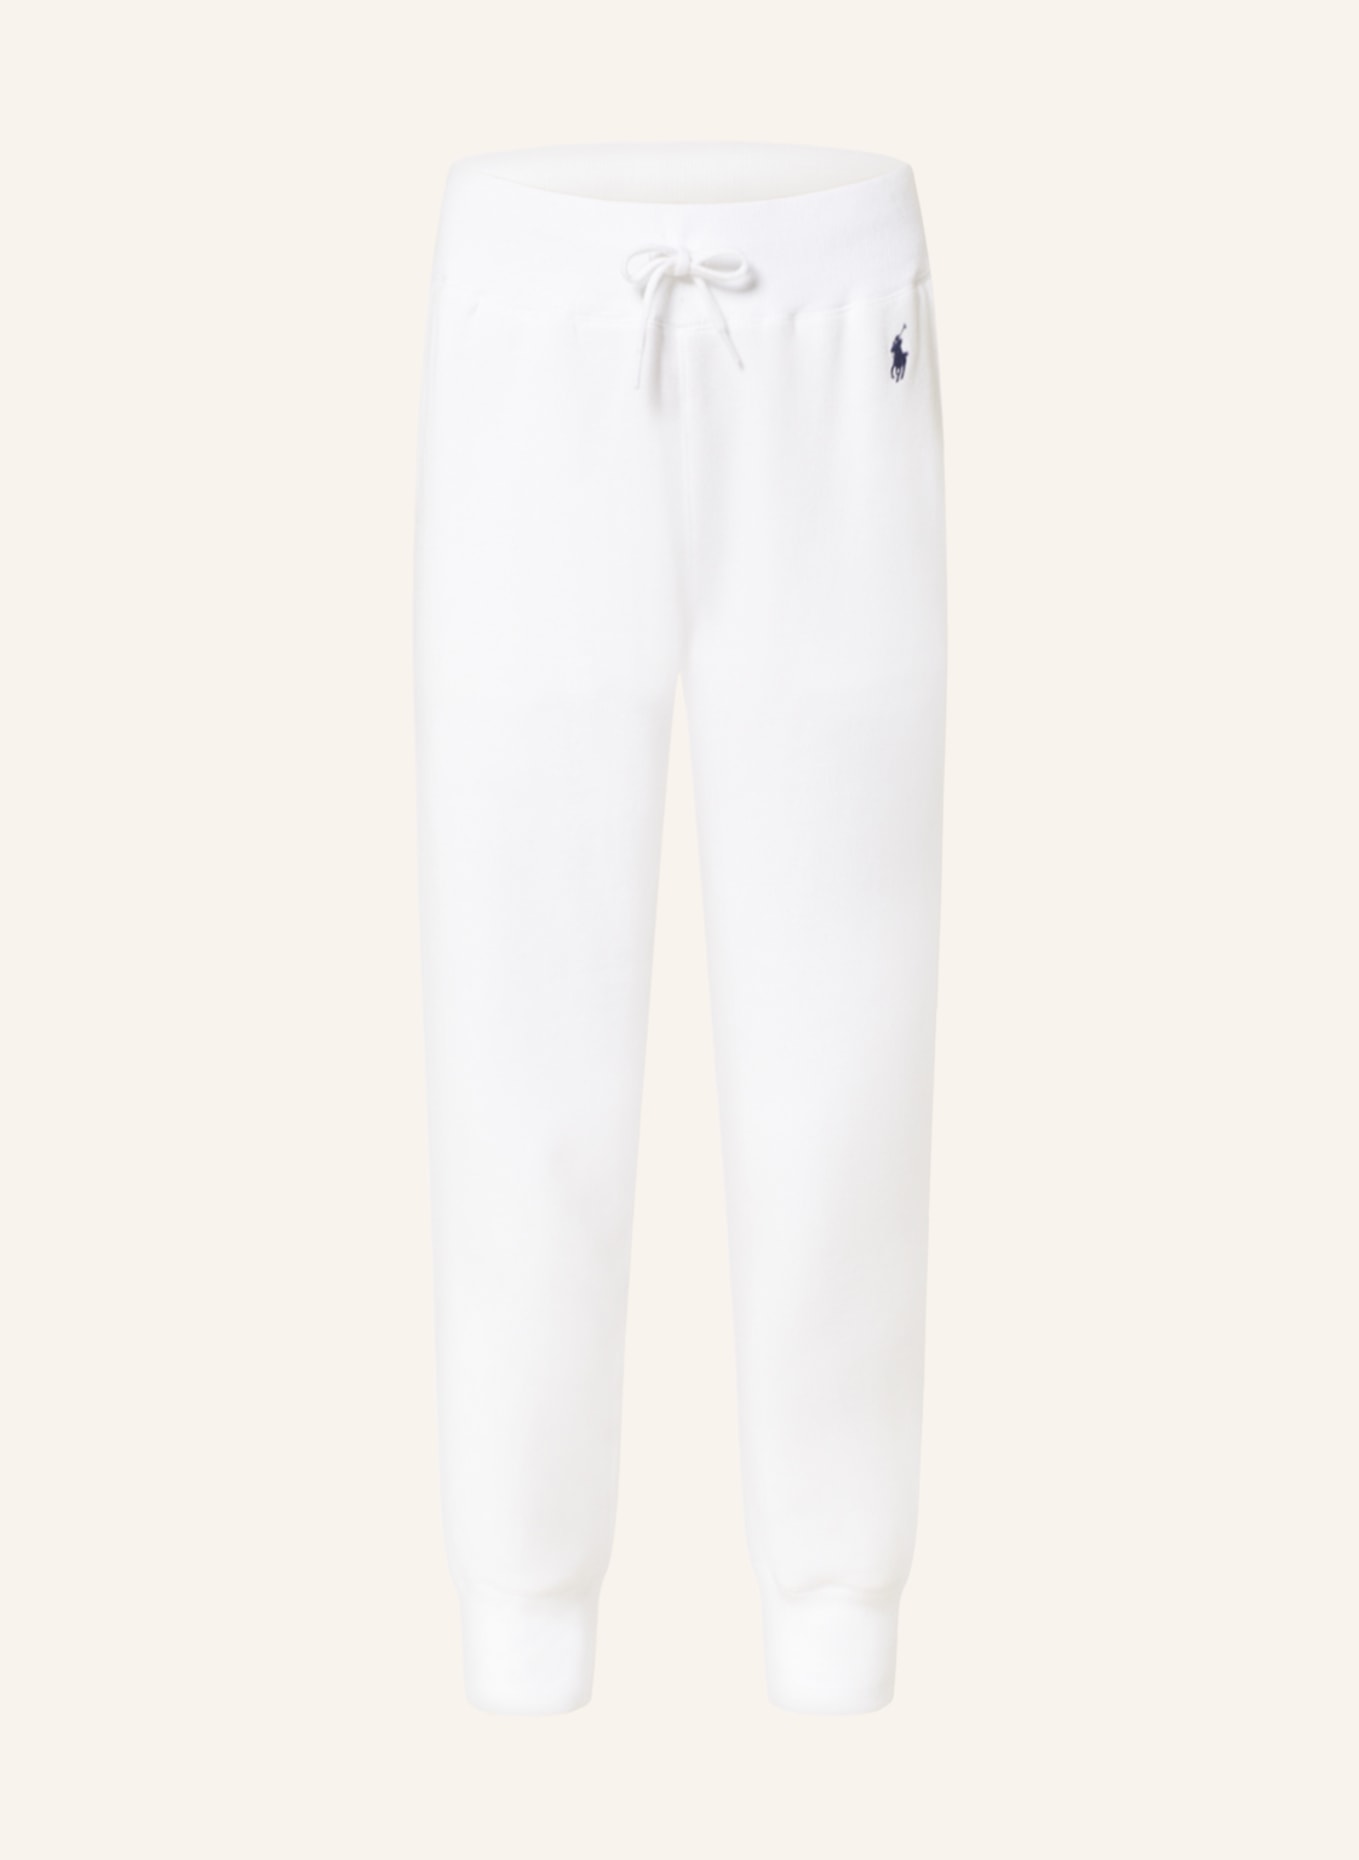 POLO RALPH LAUREN Sweatpants, Color: WHITE (Image 1)